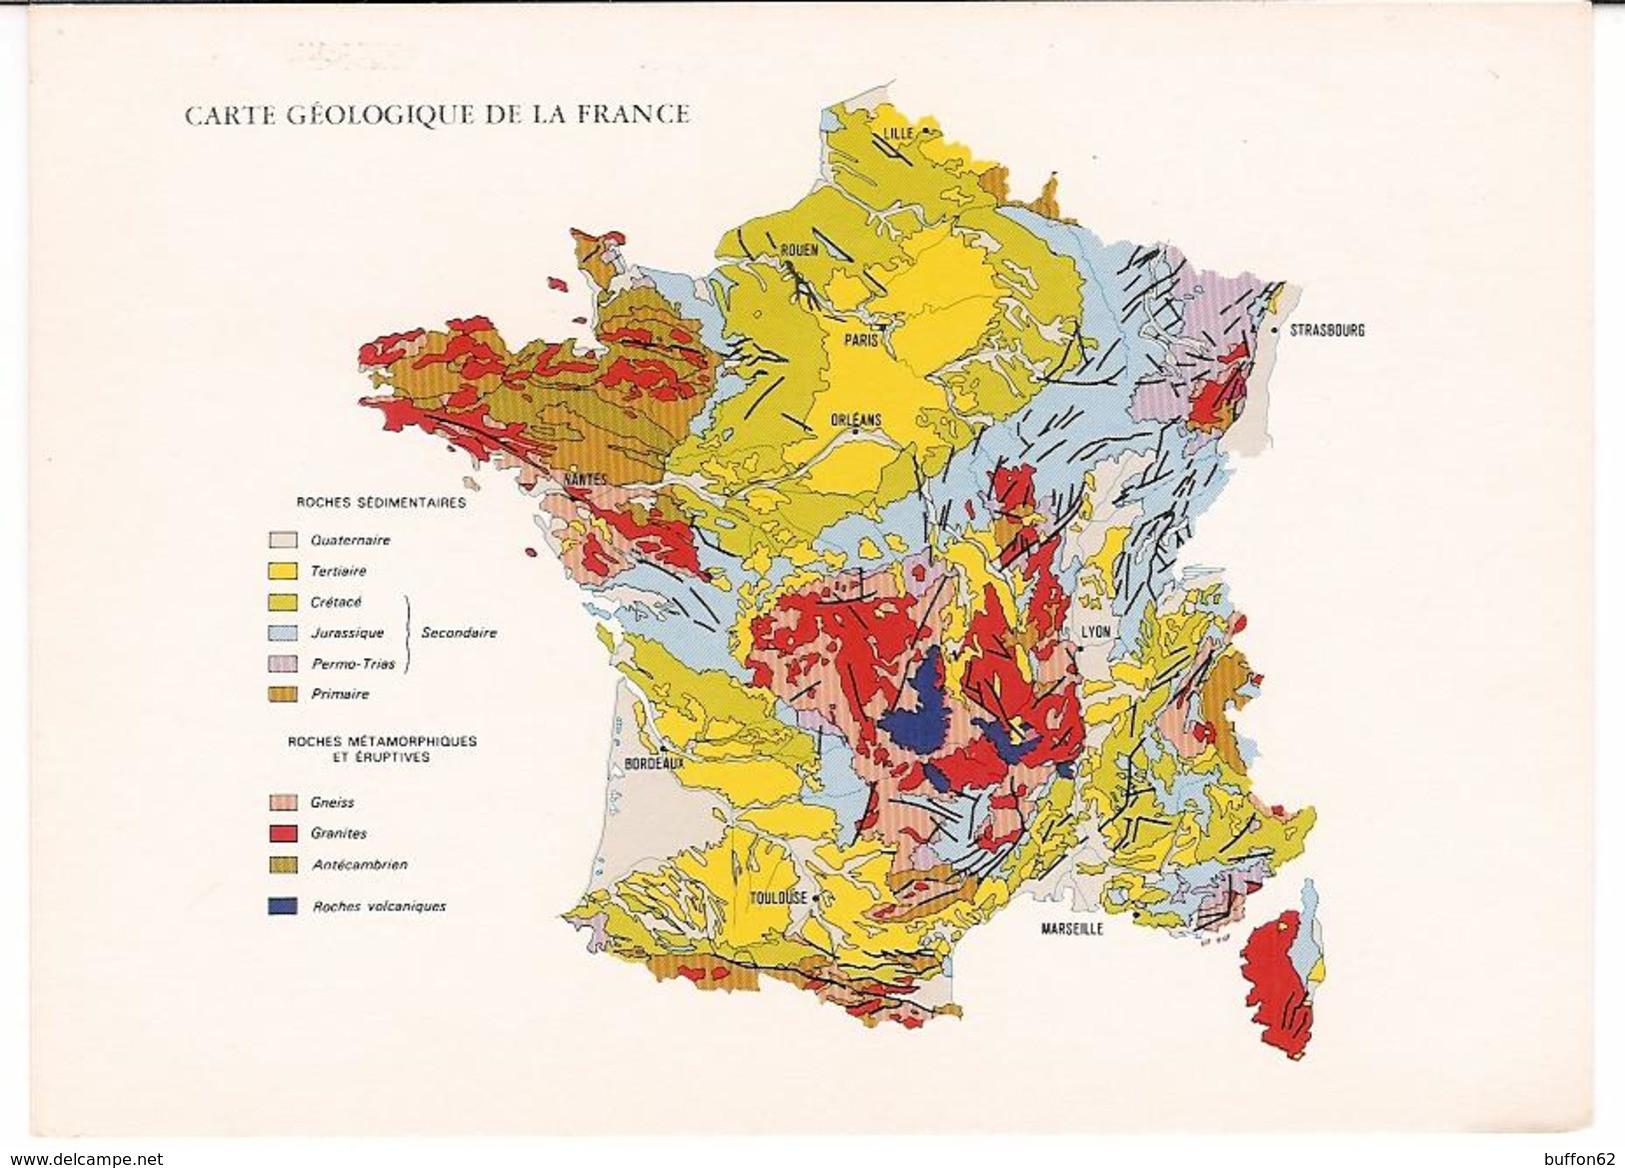 Carte Géologique De La France / Geological Map Of France. BRGM / Geological Survey. Scale 1/1,000,000. - Cartes Géographiques